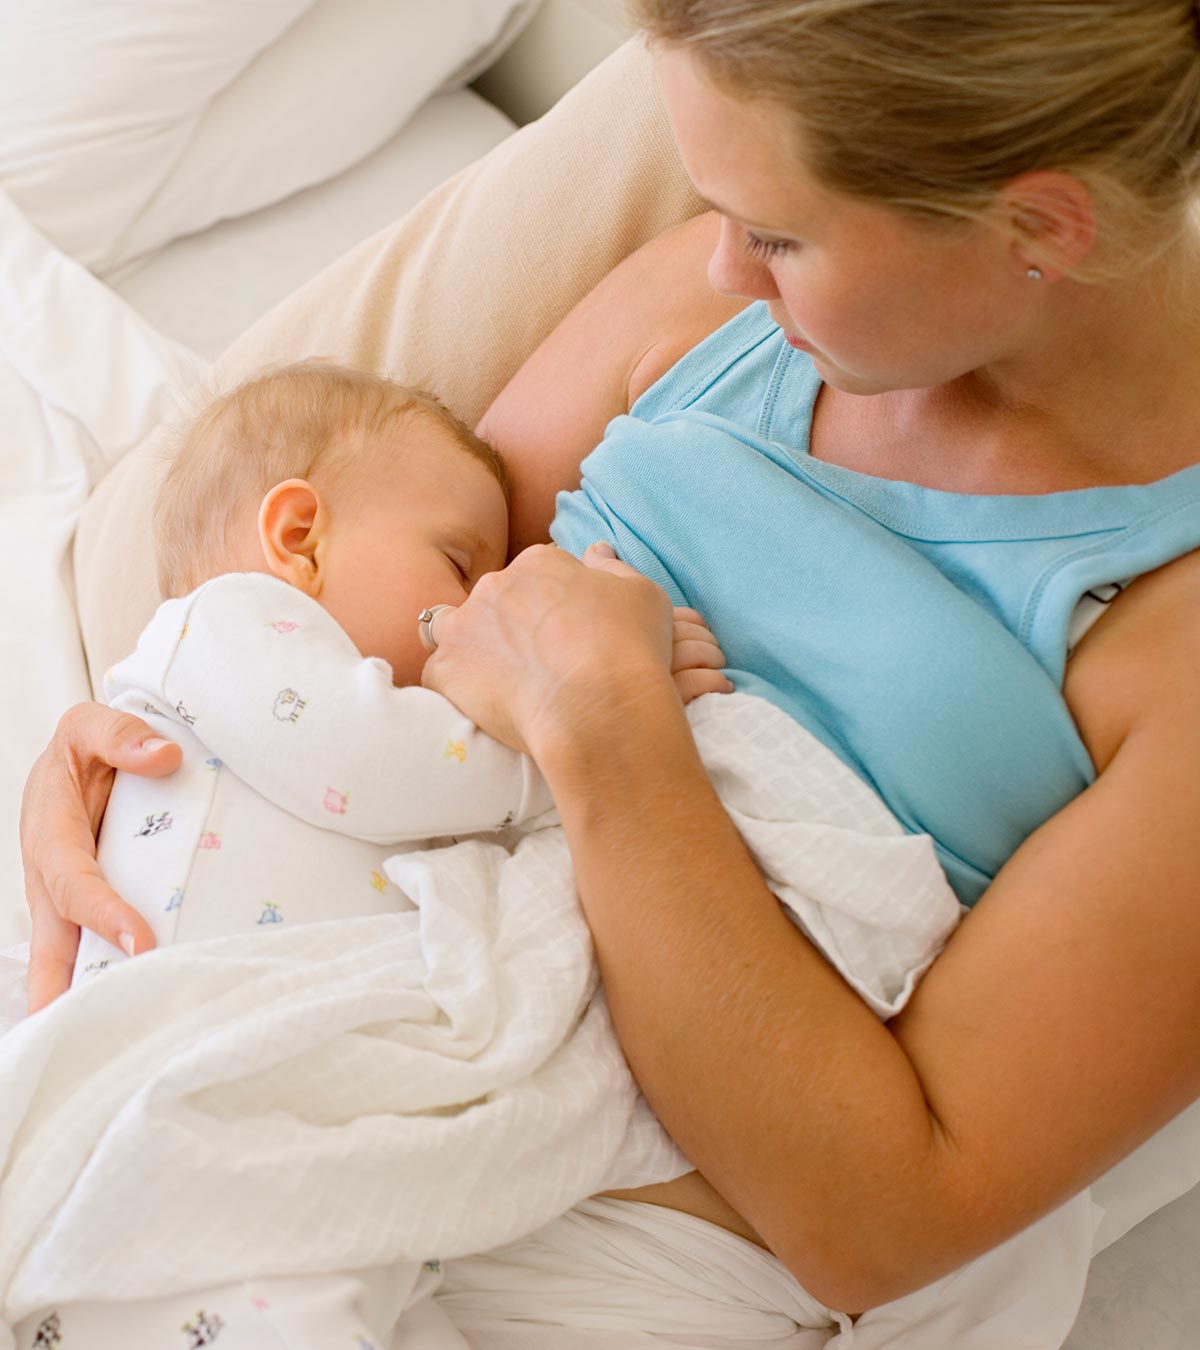 单乳母乳喂养:原因、副作用和提示